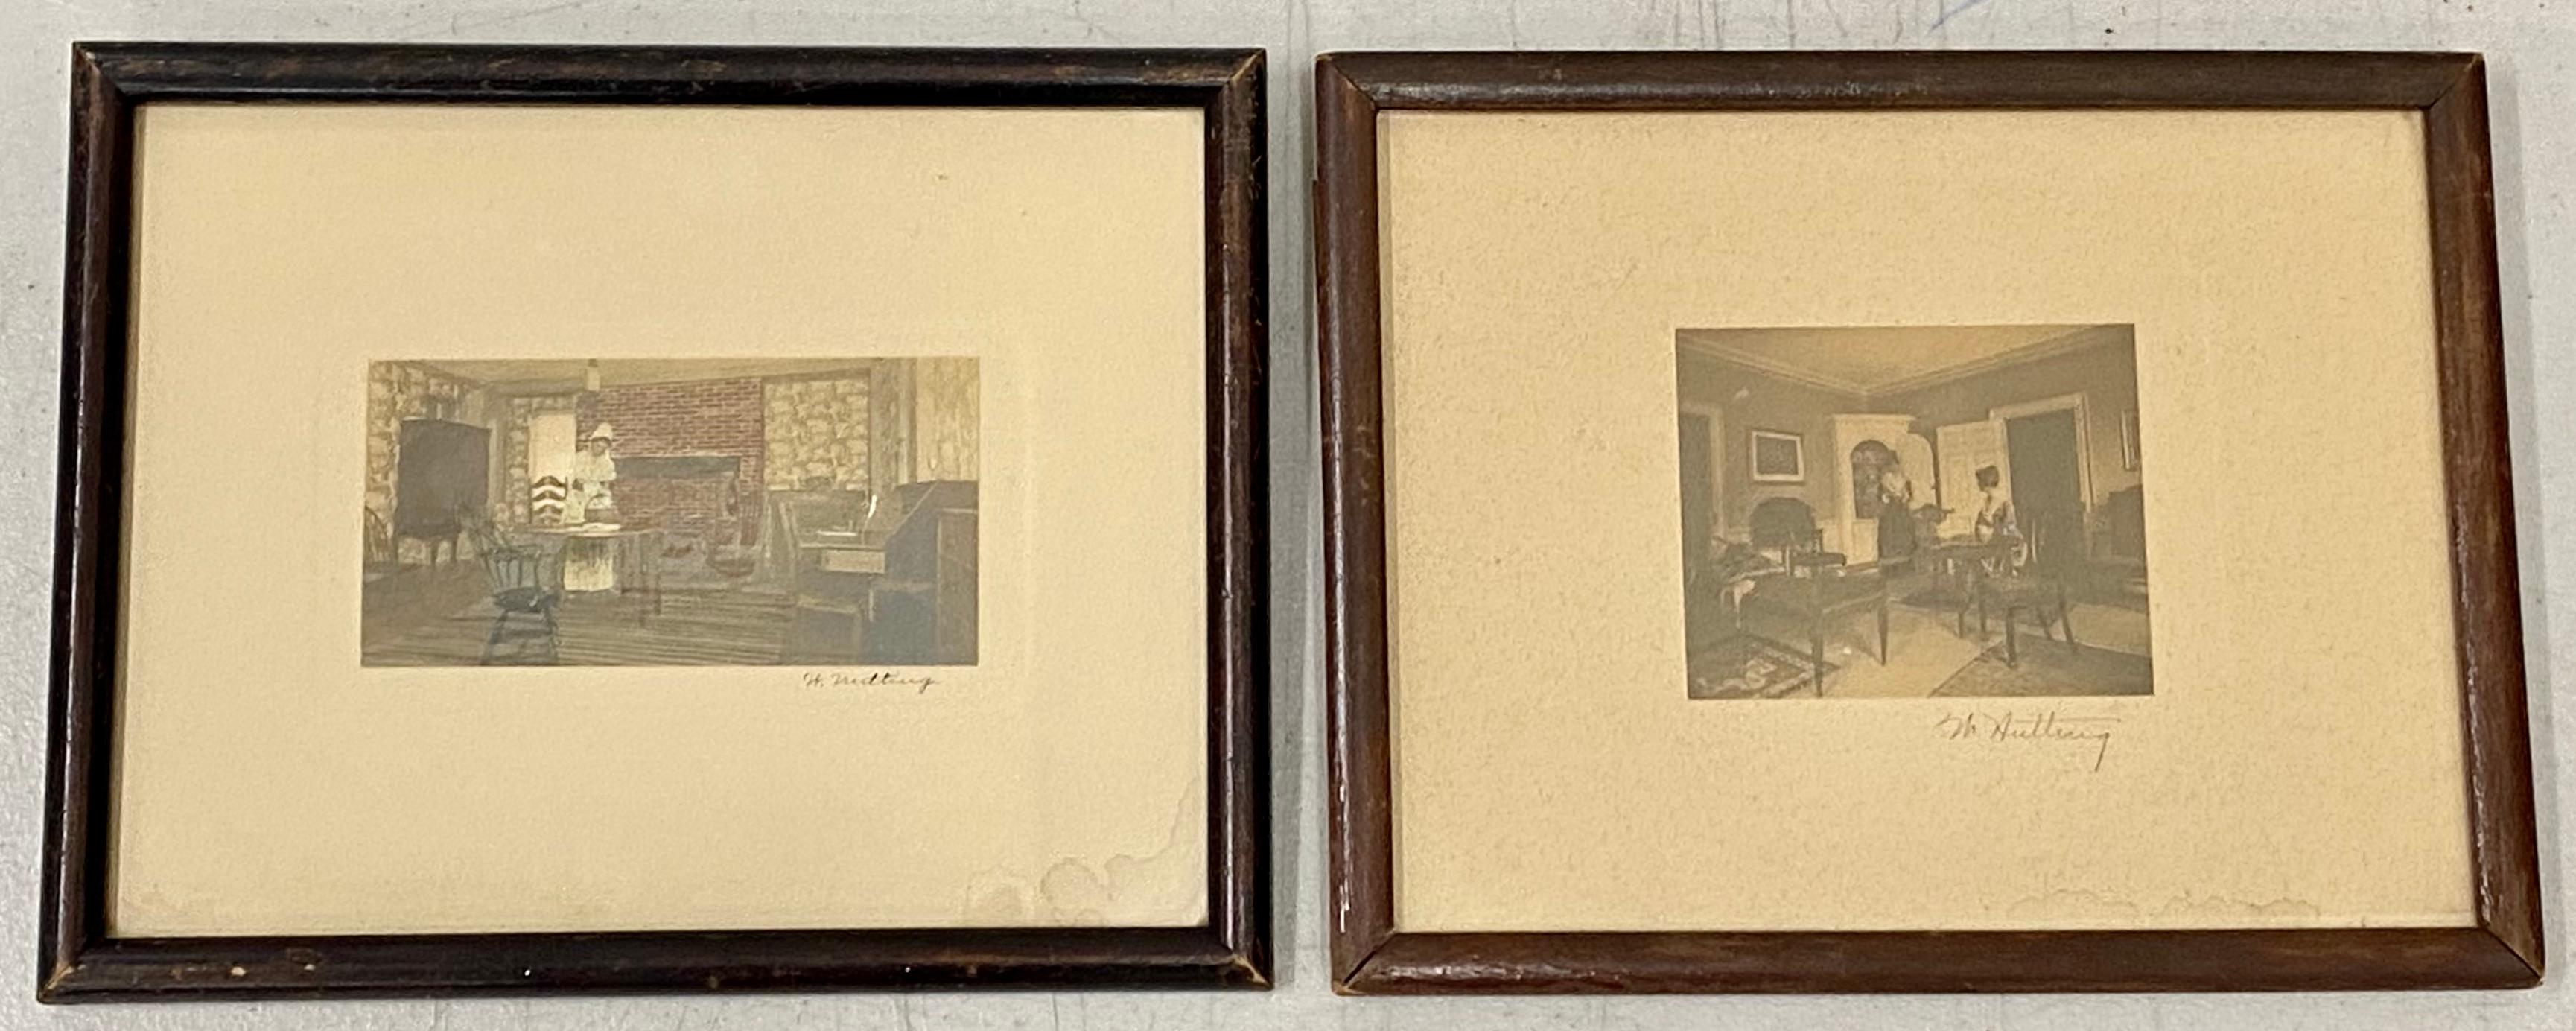 Paar handkolorierte Innenraumfotografien des frühen 20. Jahrhunderts von Wallace Nutting, um 1910

Antike Fotografien - sehr detailliert - handkoloriert

Unterzeichnet von Nutting

Ein Foto misst 5" breit x 2,5" hoch, das andere misst 3,75" breit x